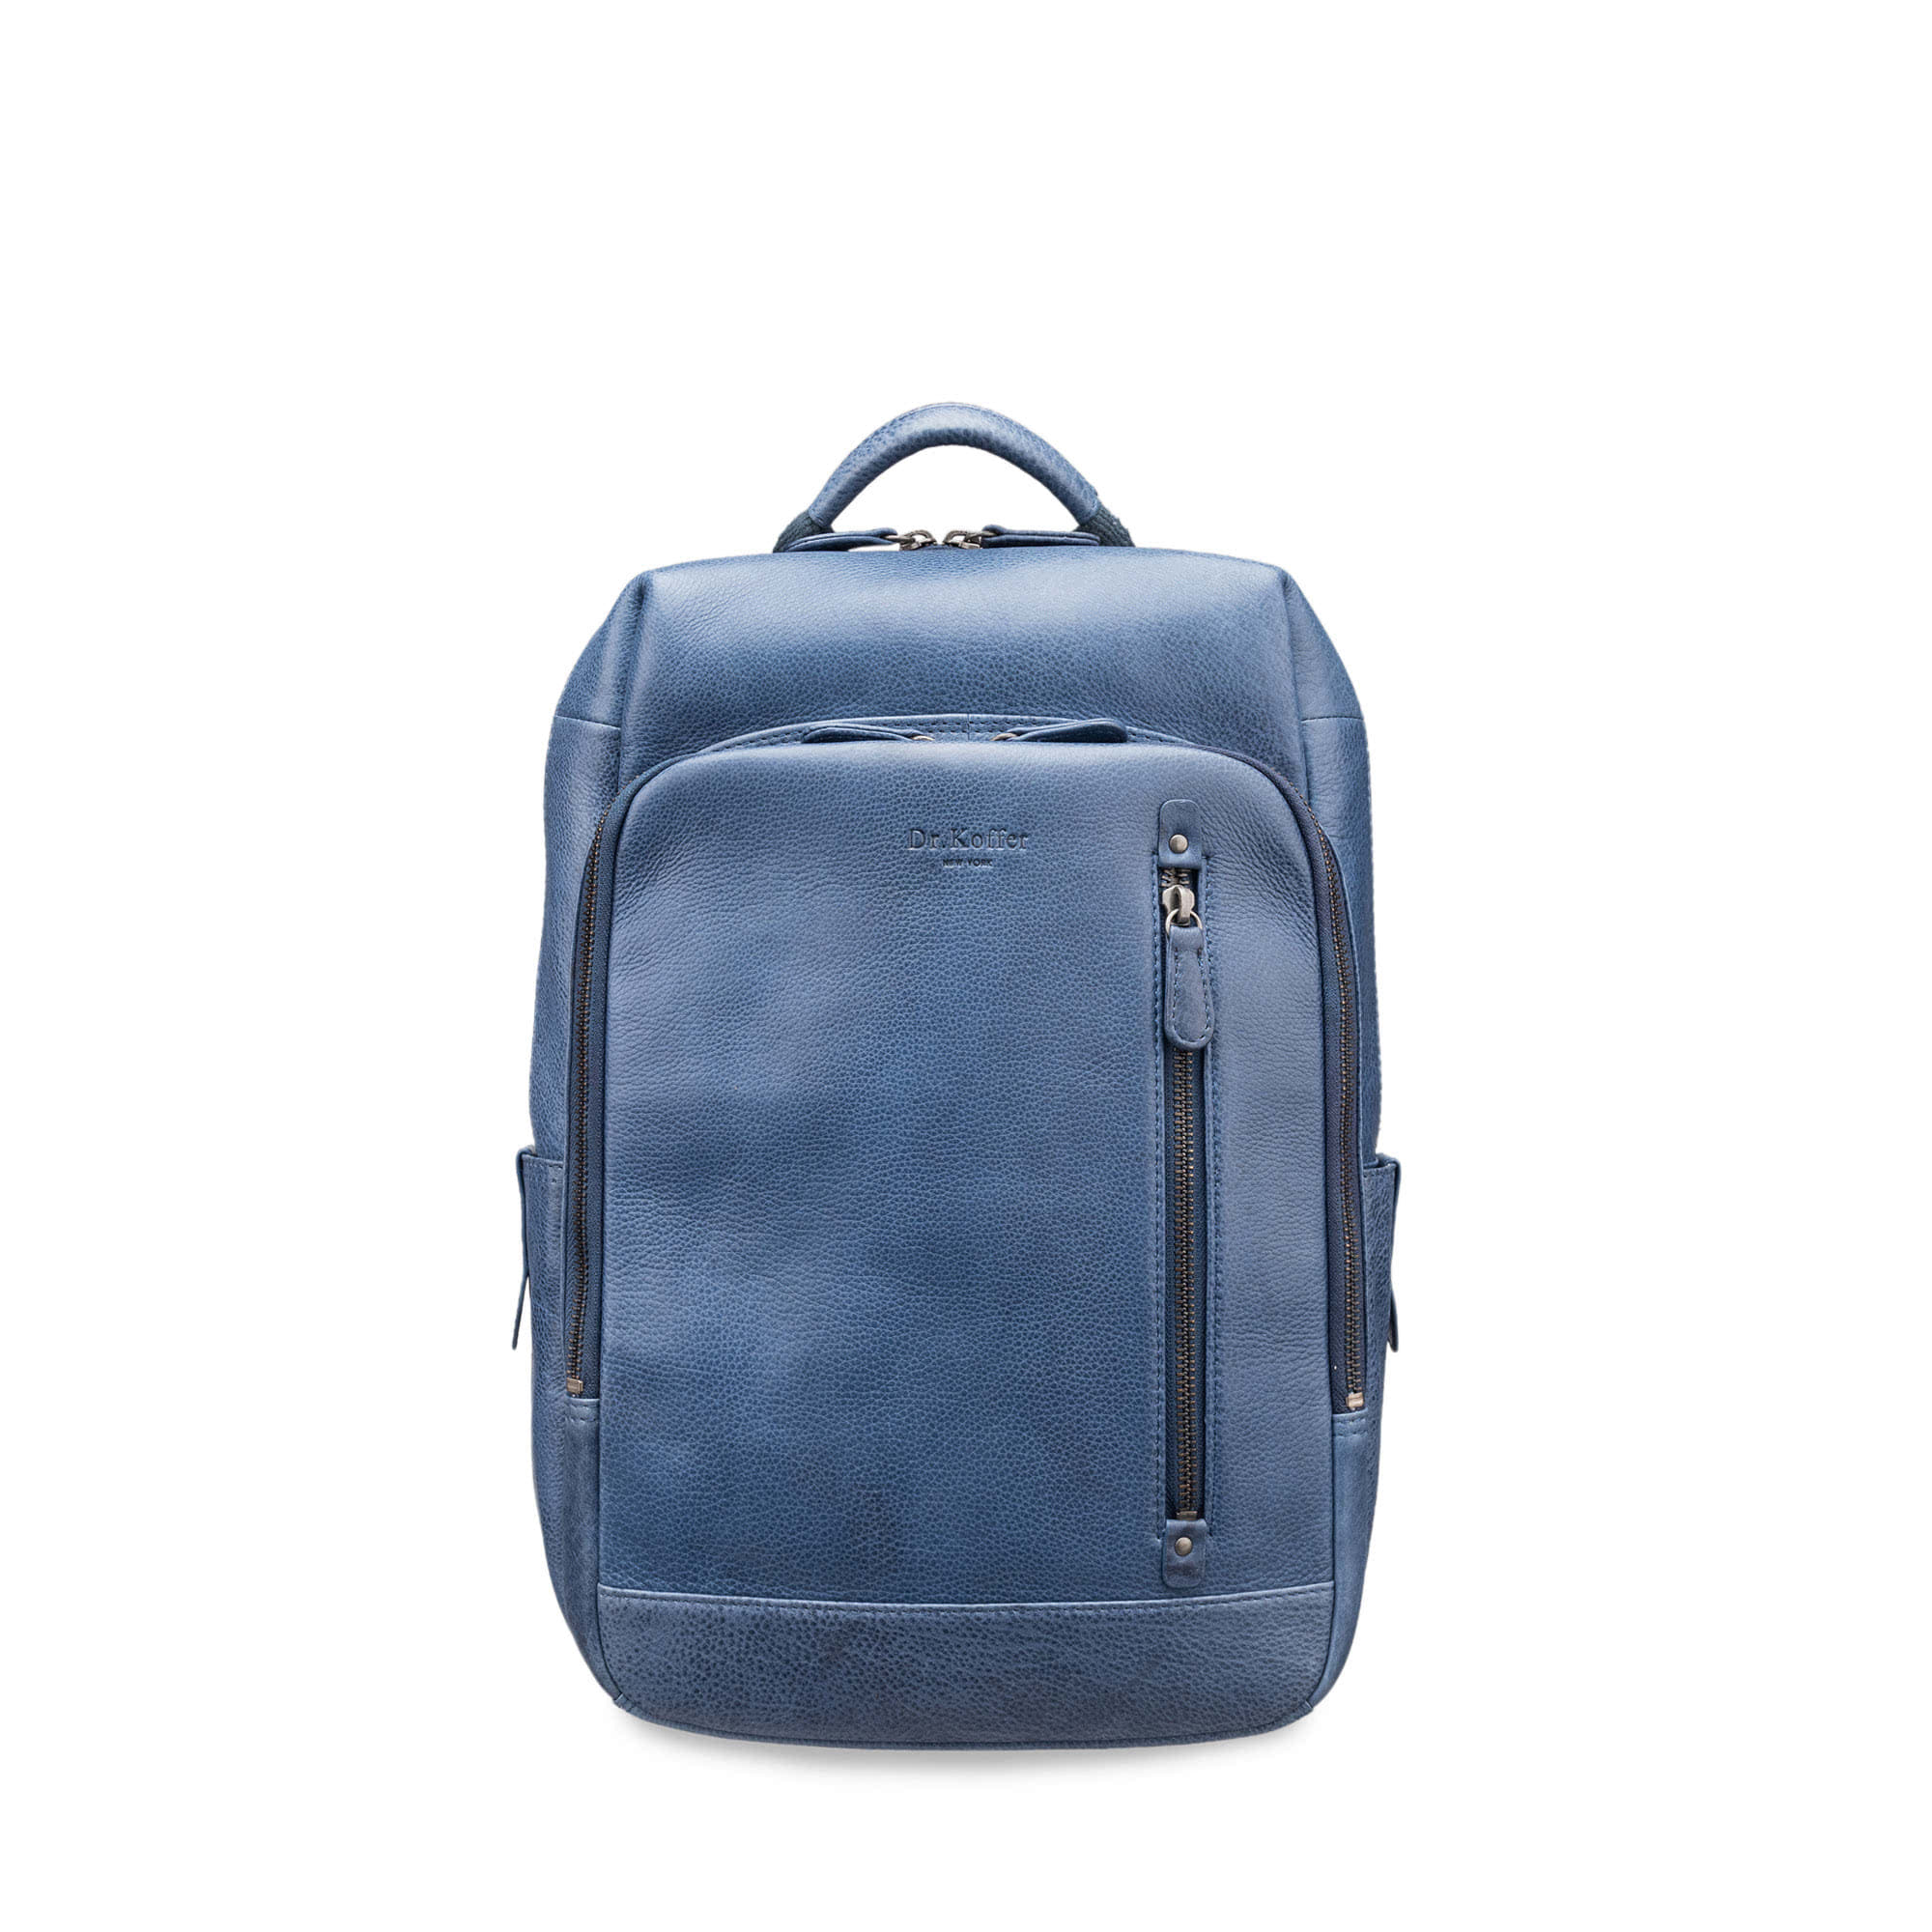 Др.Коффер B402691-154-60 рюкзак, цвет синий - фото 2